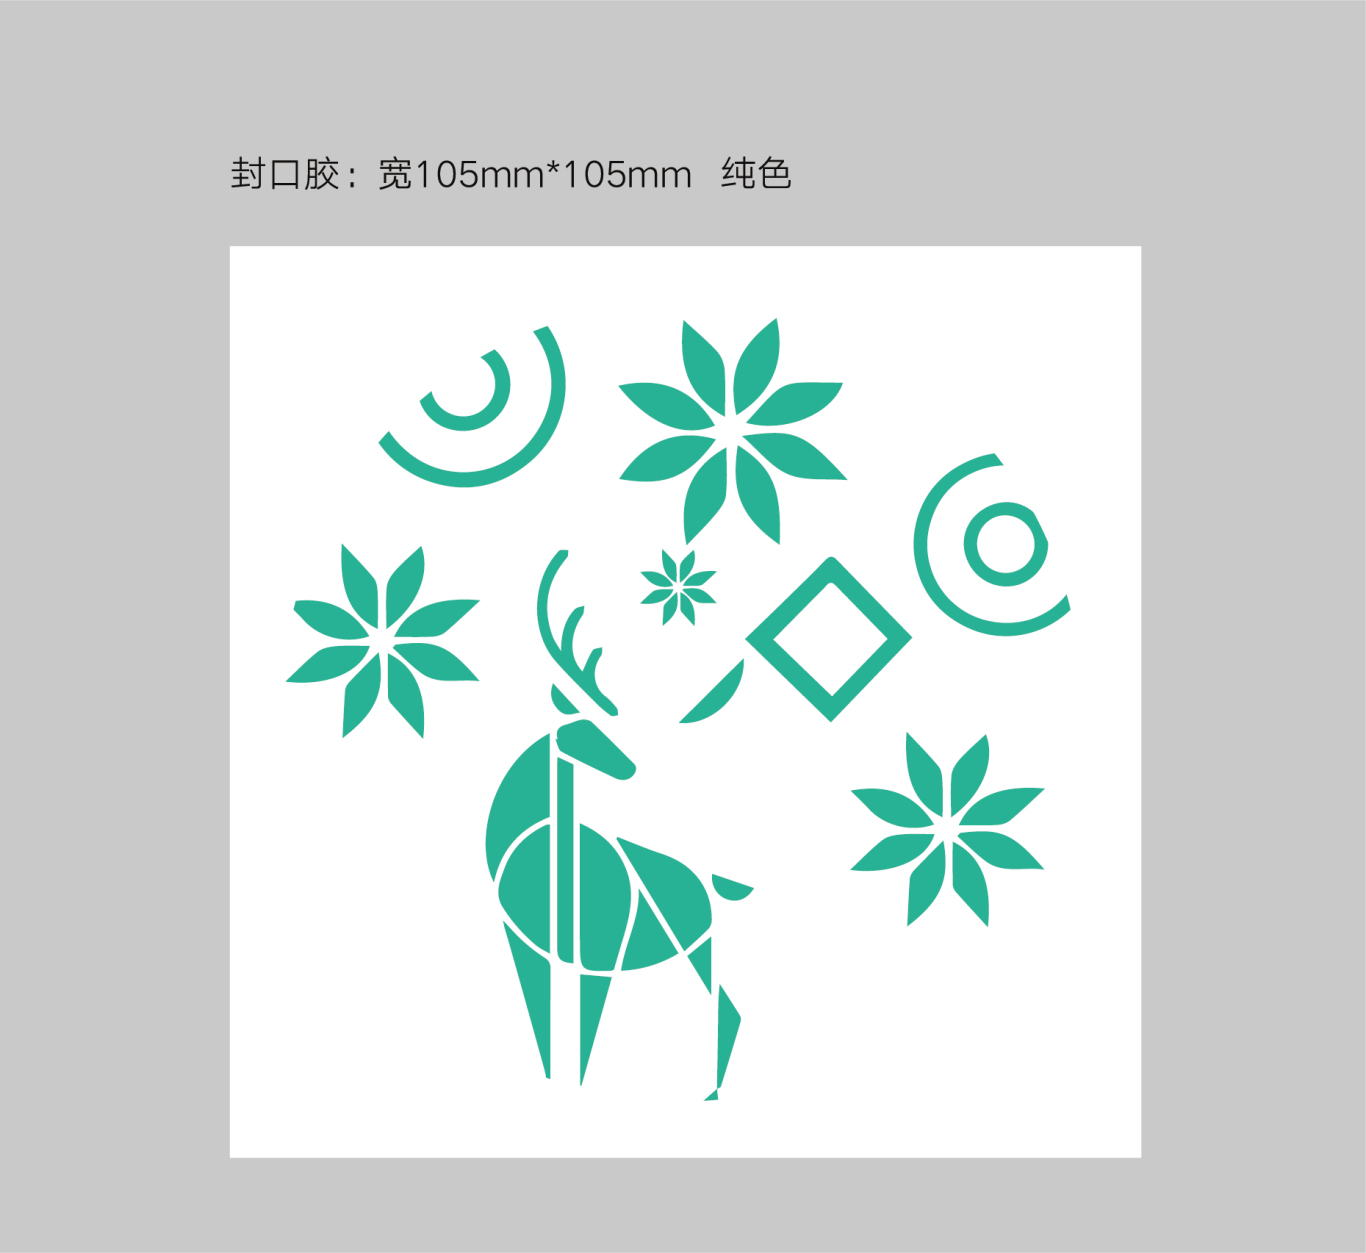 清舞飄雪茶飲 logo設計及吉祥物設計圖16